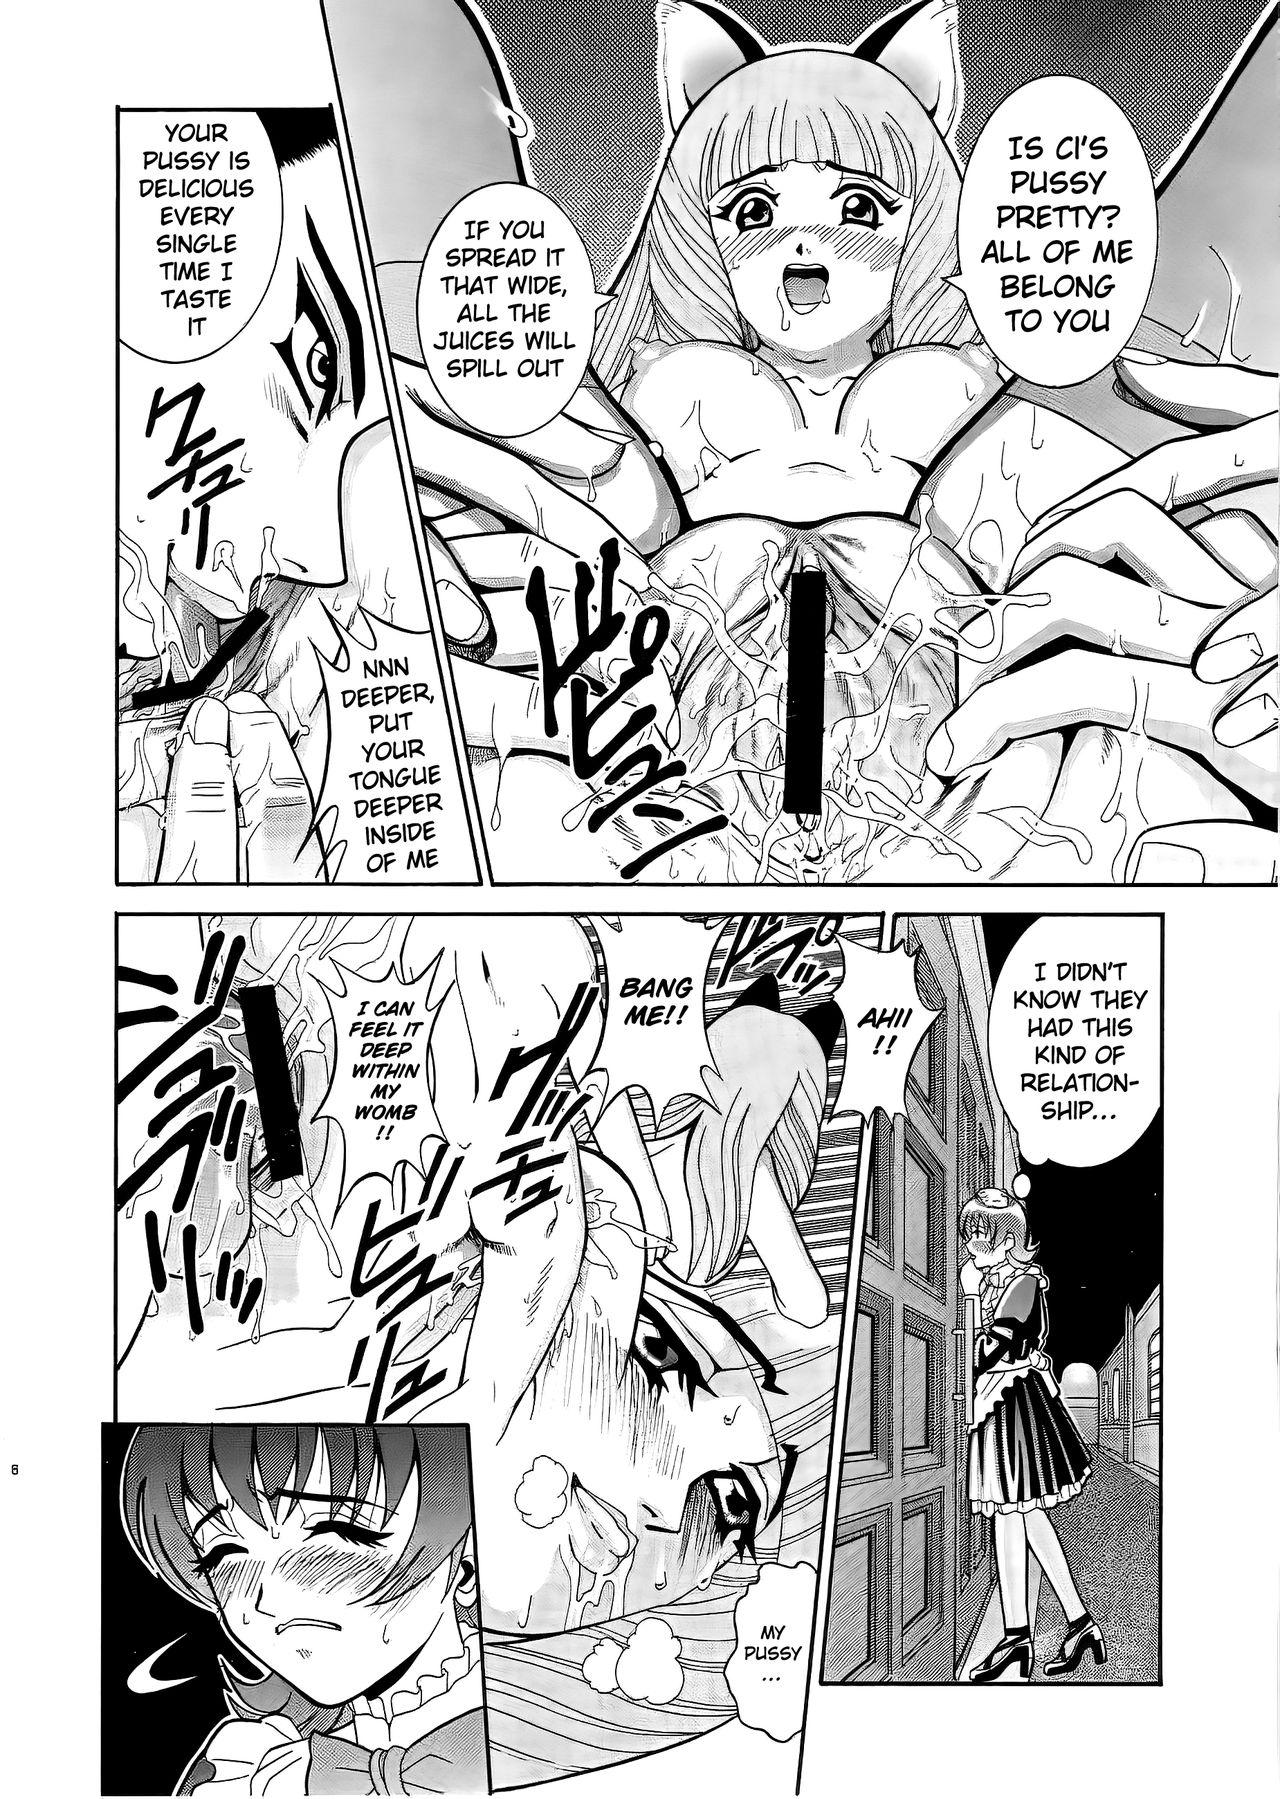 Blowjob ANGEL PAIN 6 - Sakura taisen | sakura wars Licking Pussy - Page 7